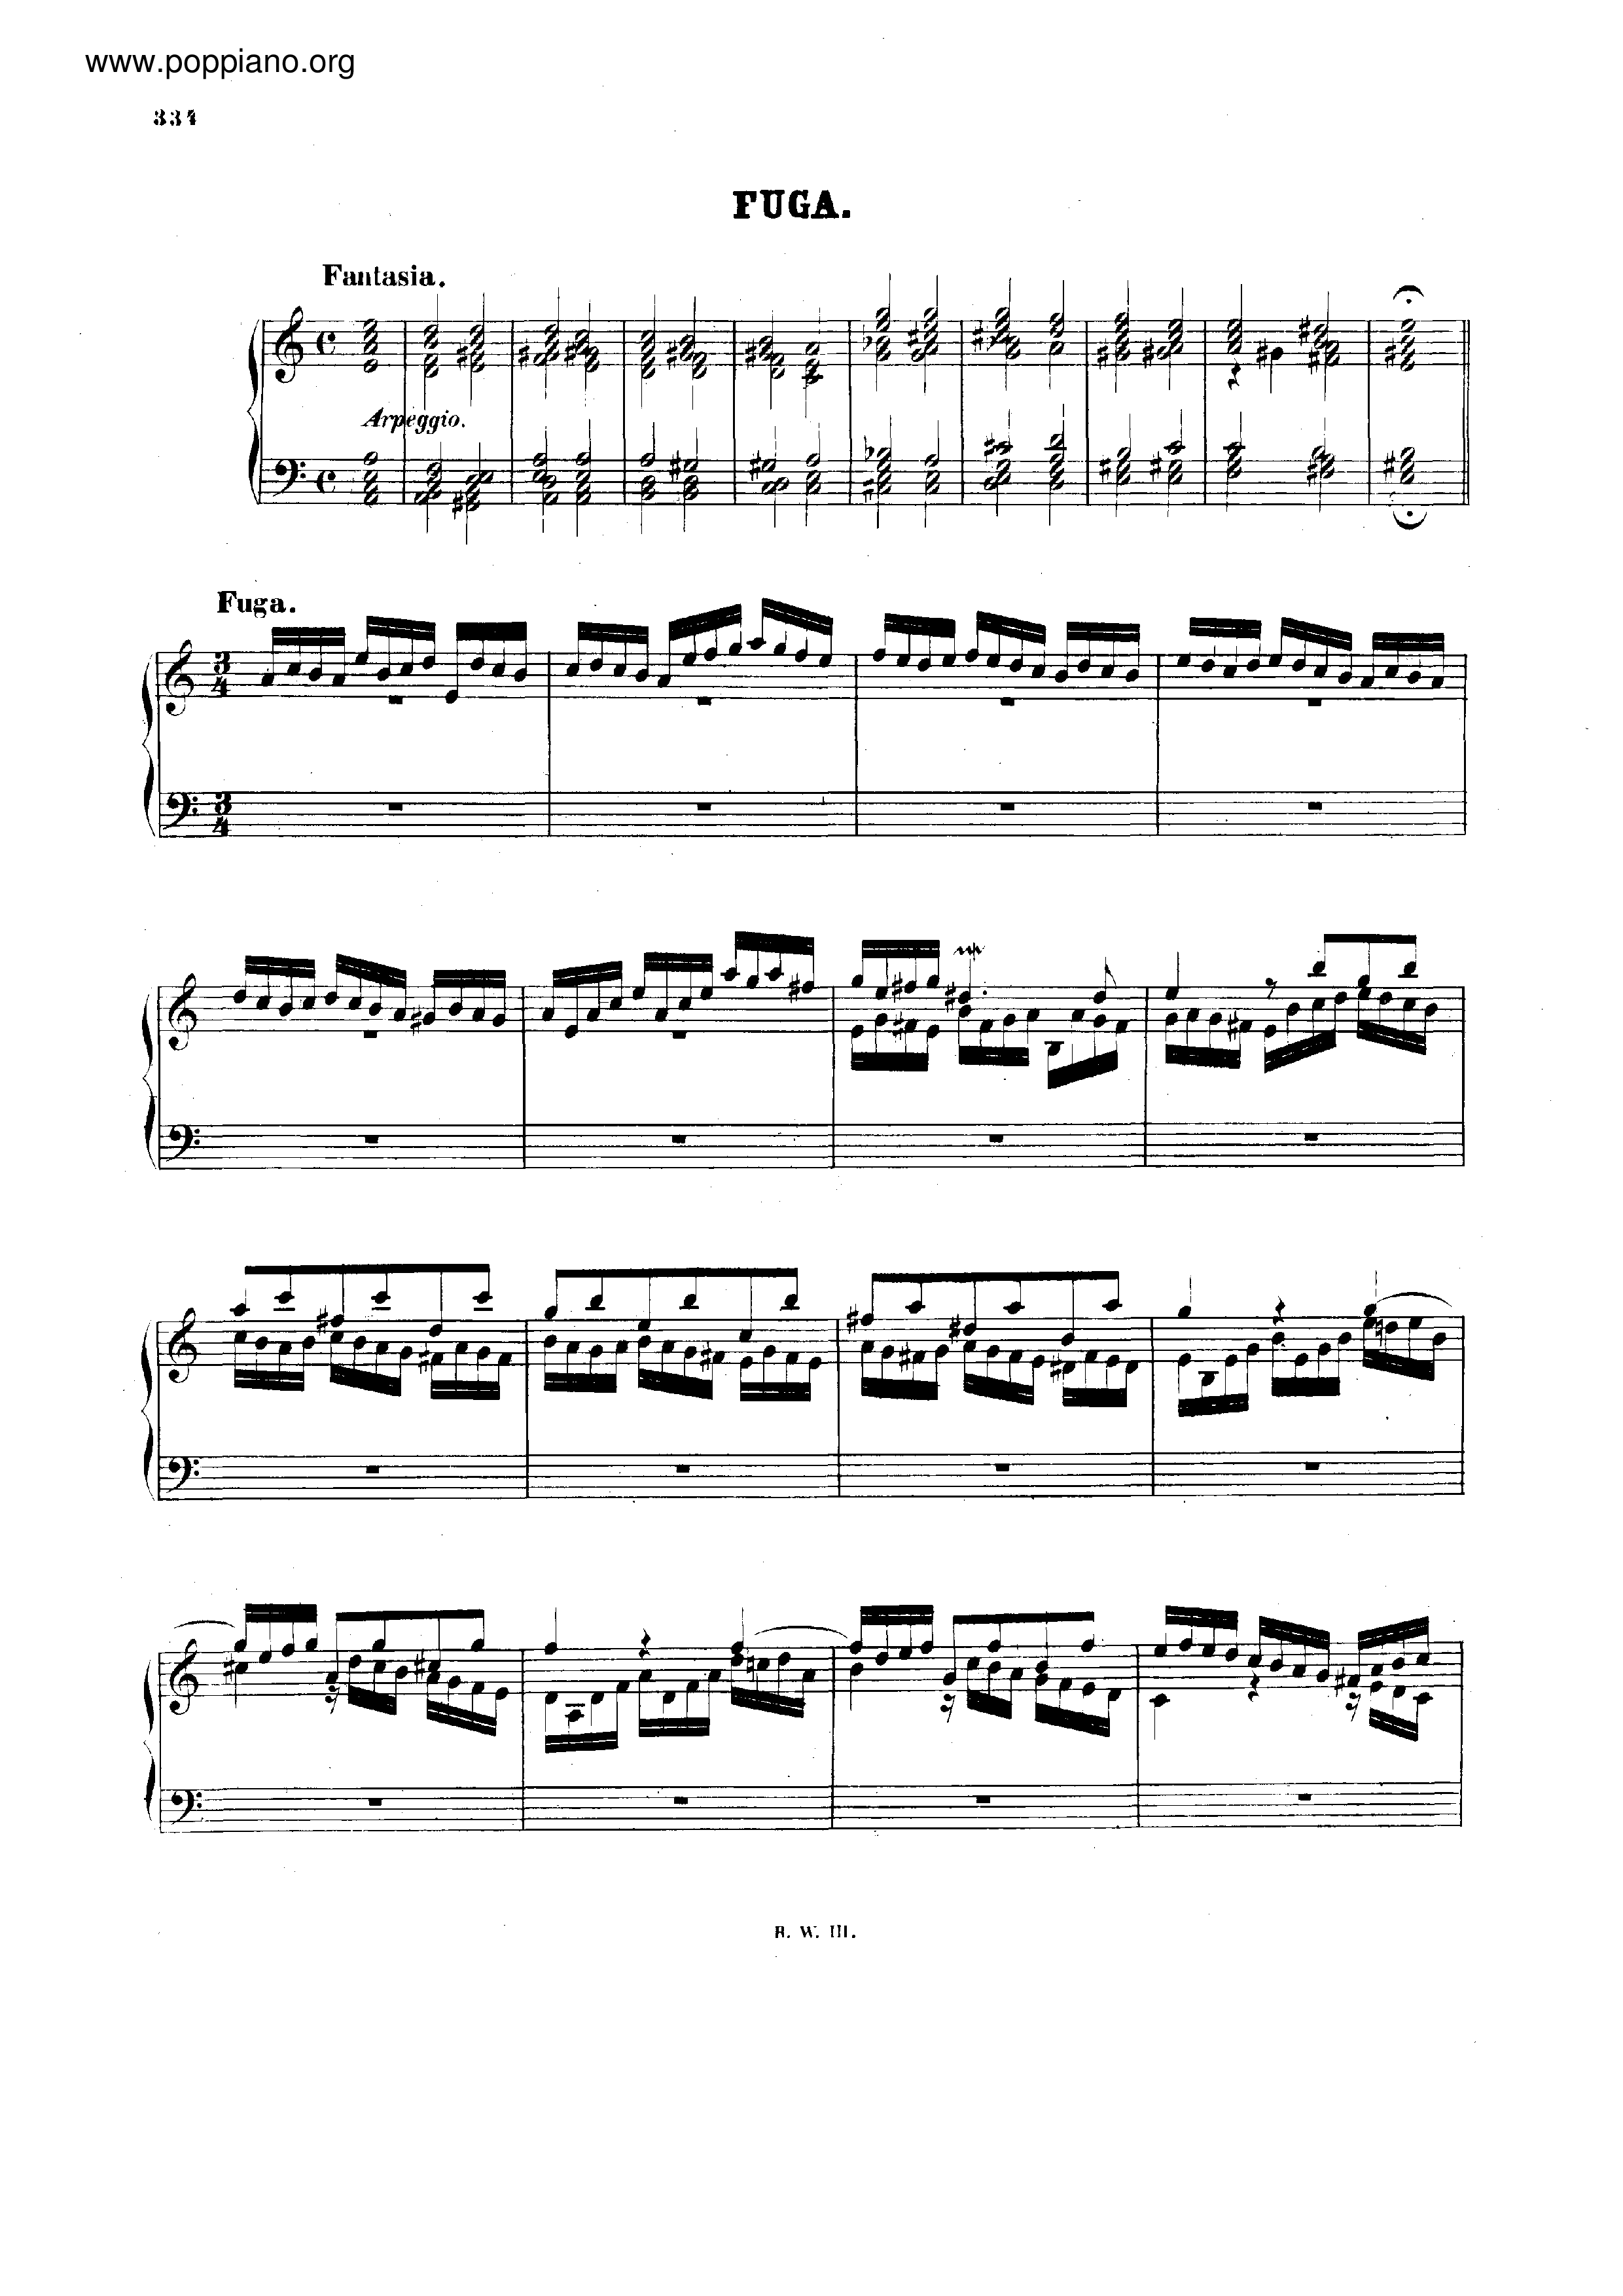 Fugue in A minor, BWV 944 Score